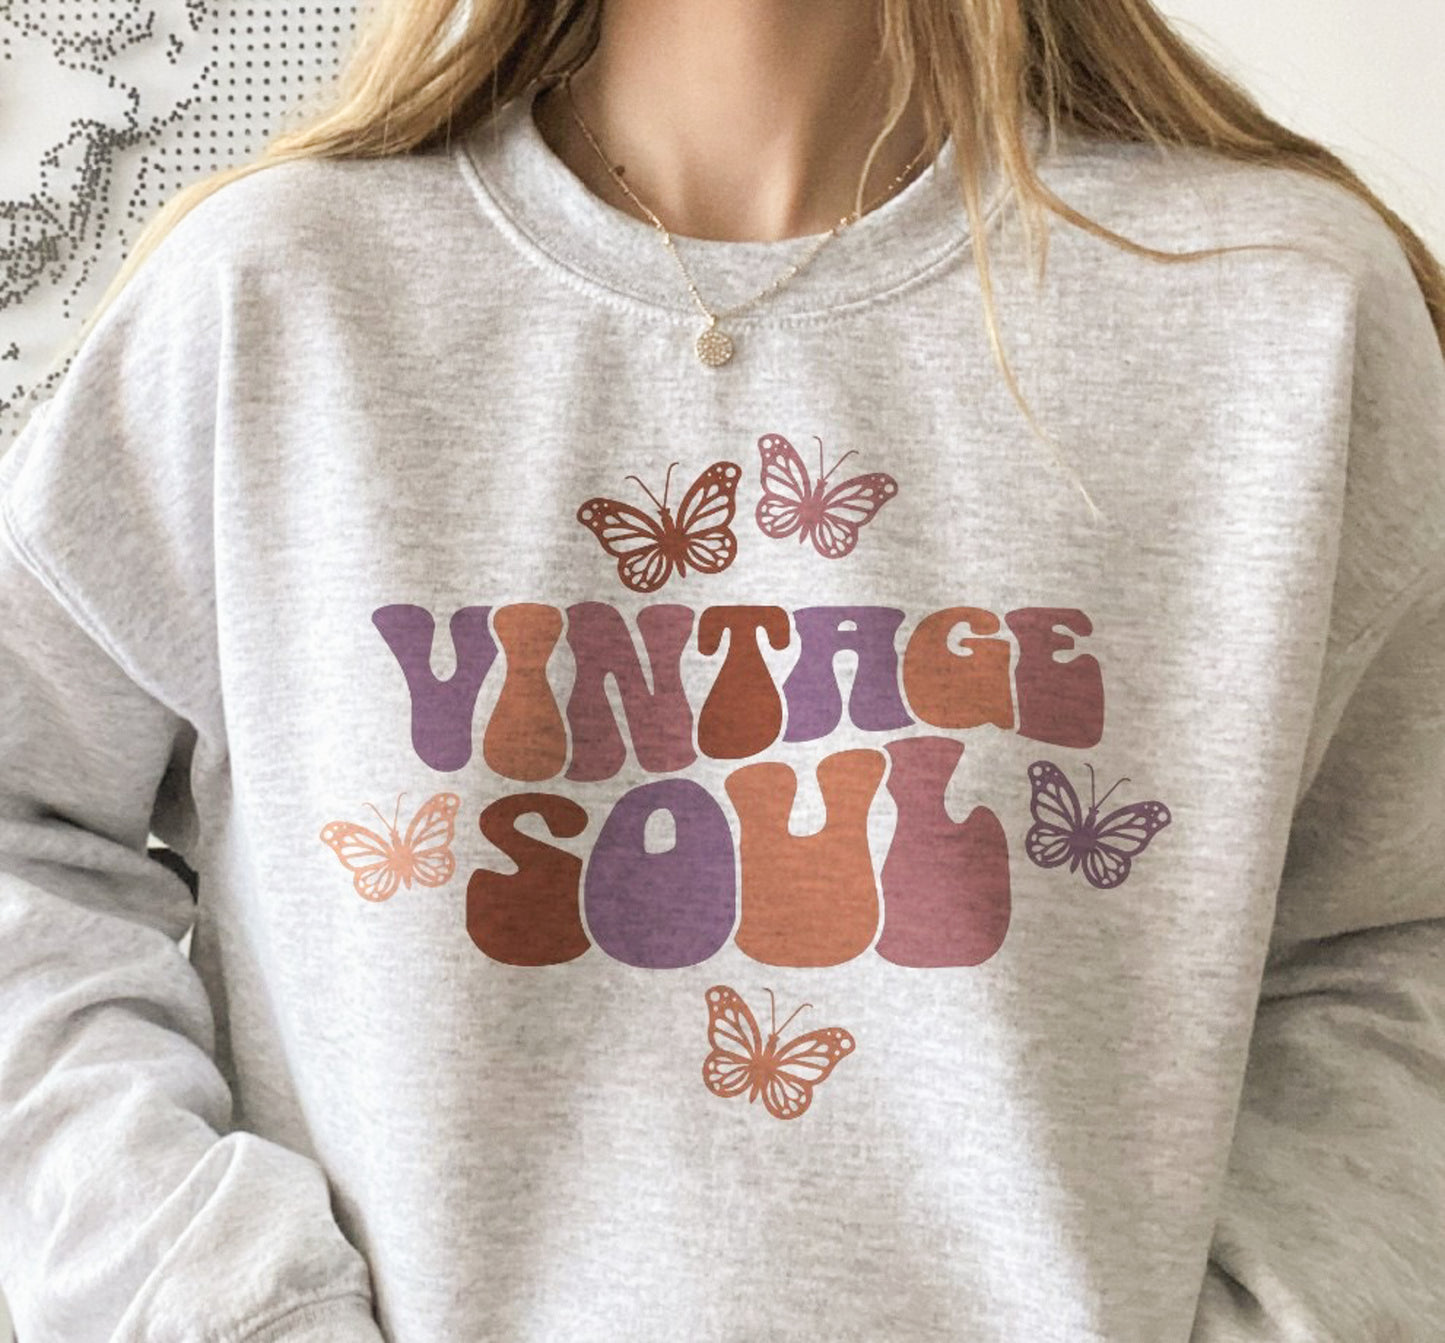 Vintage Soul Crew Sweatshirt